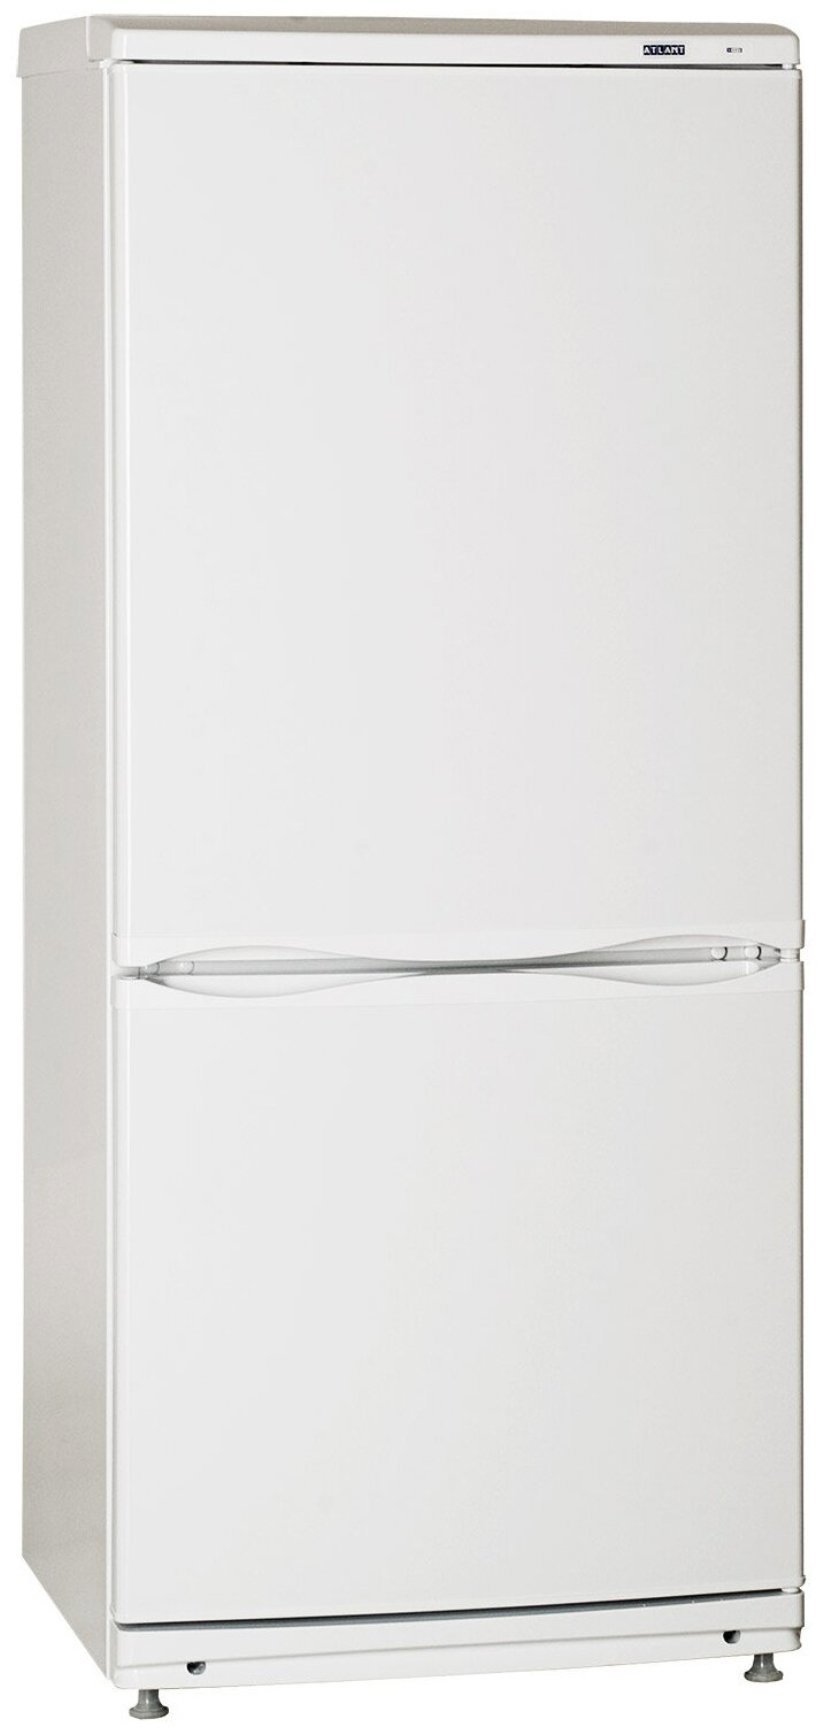 92707366 Отдельностоящий холодильник Х-КХМ-4008-000 60x142 см цвет белый STLM-0536164 АТЛАНТ